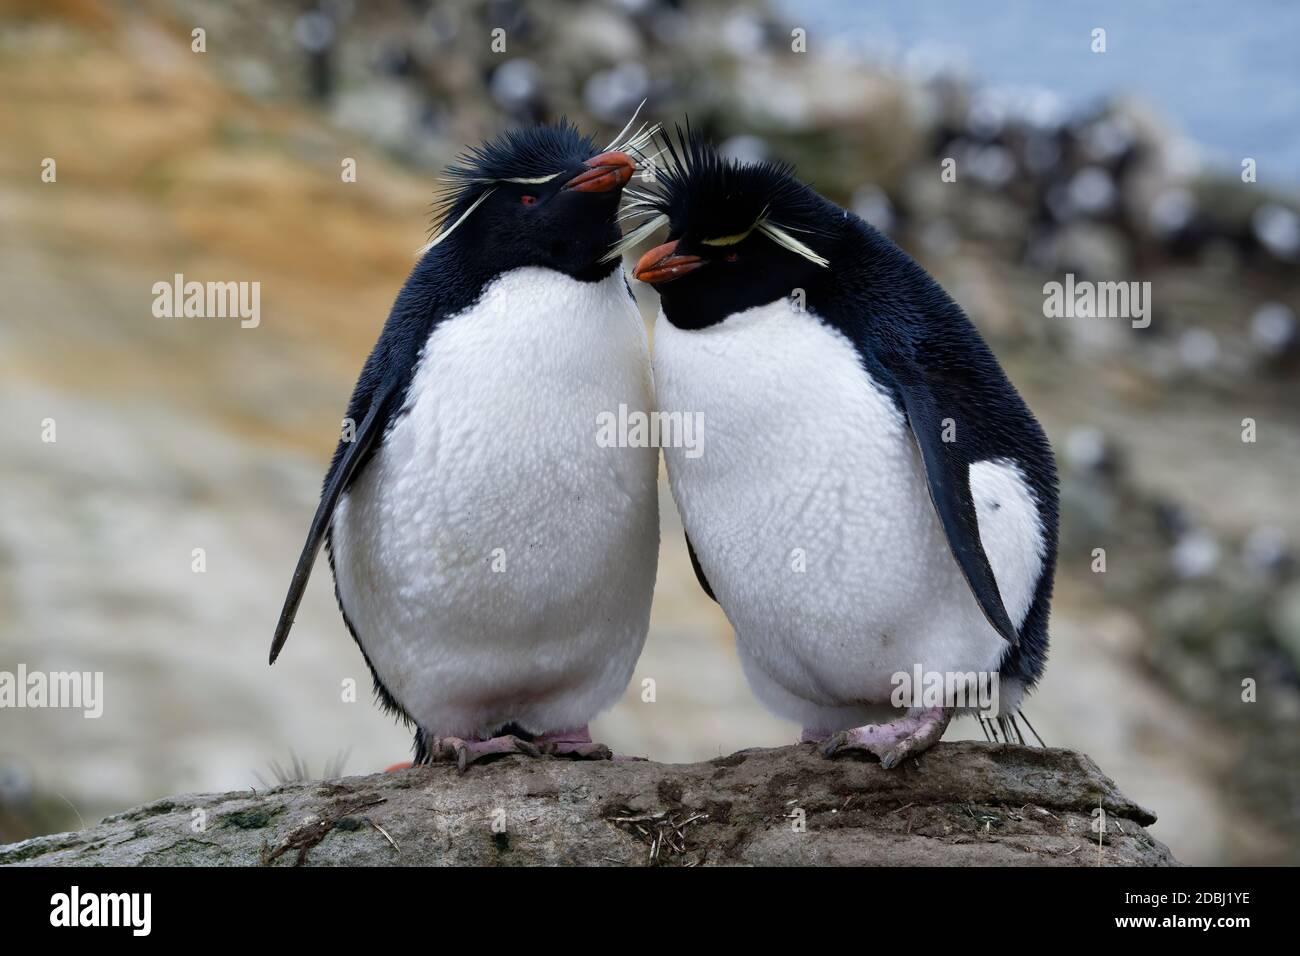 Coppia dei pinguini del sud del Rockhopper (Eudyptes crisocome), Nuova isola, Isole Falkland, territorio britannico d'oltremare, Sudamerica Foto Stock